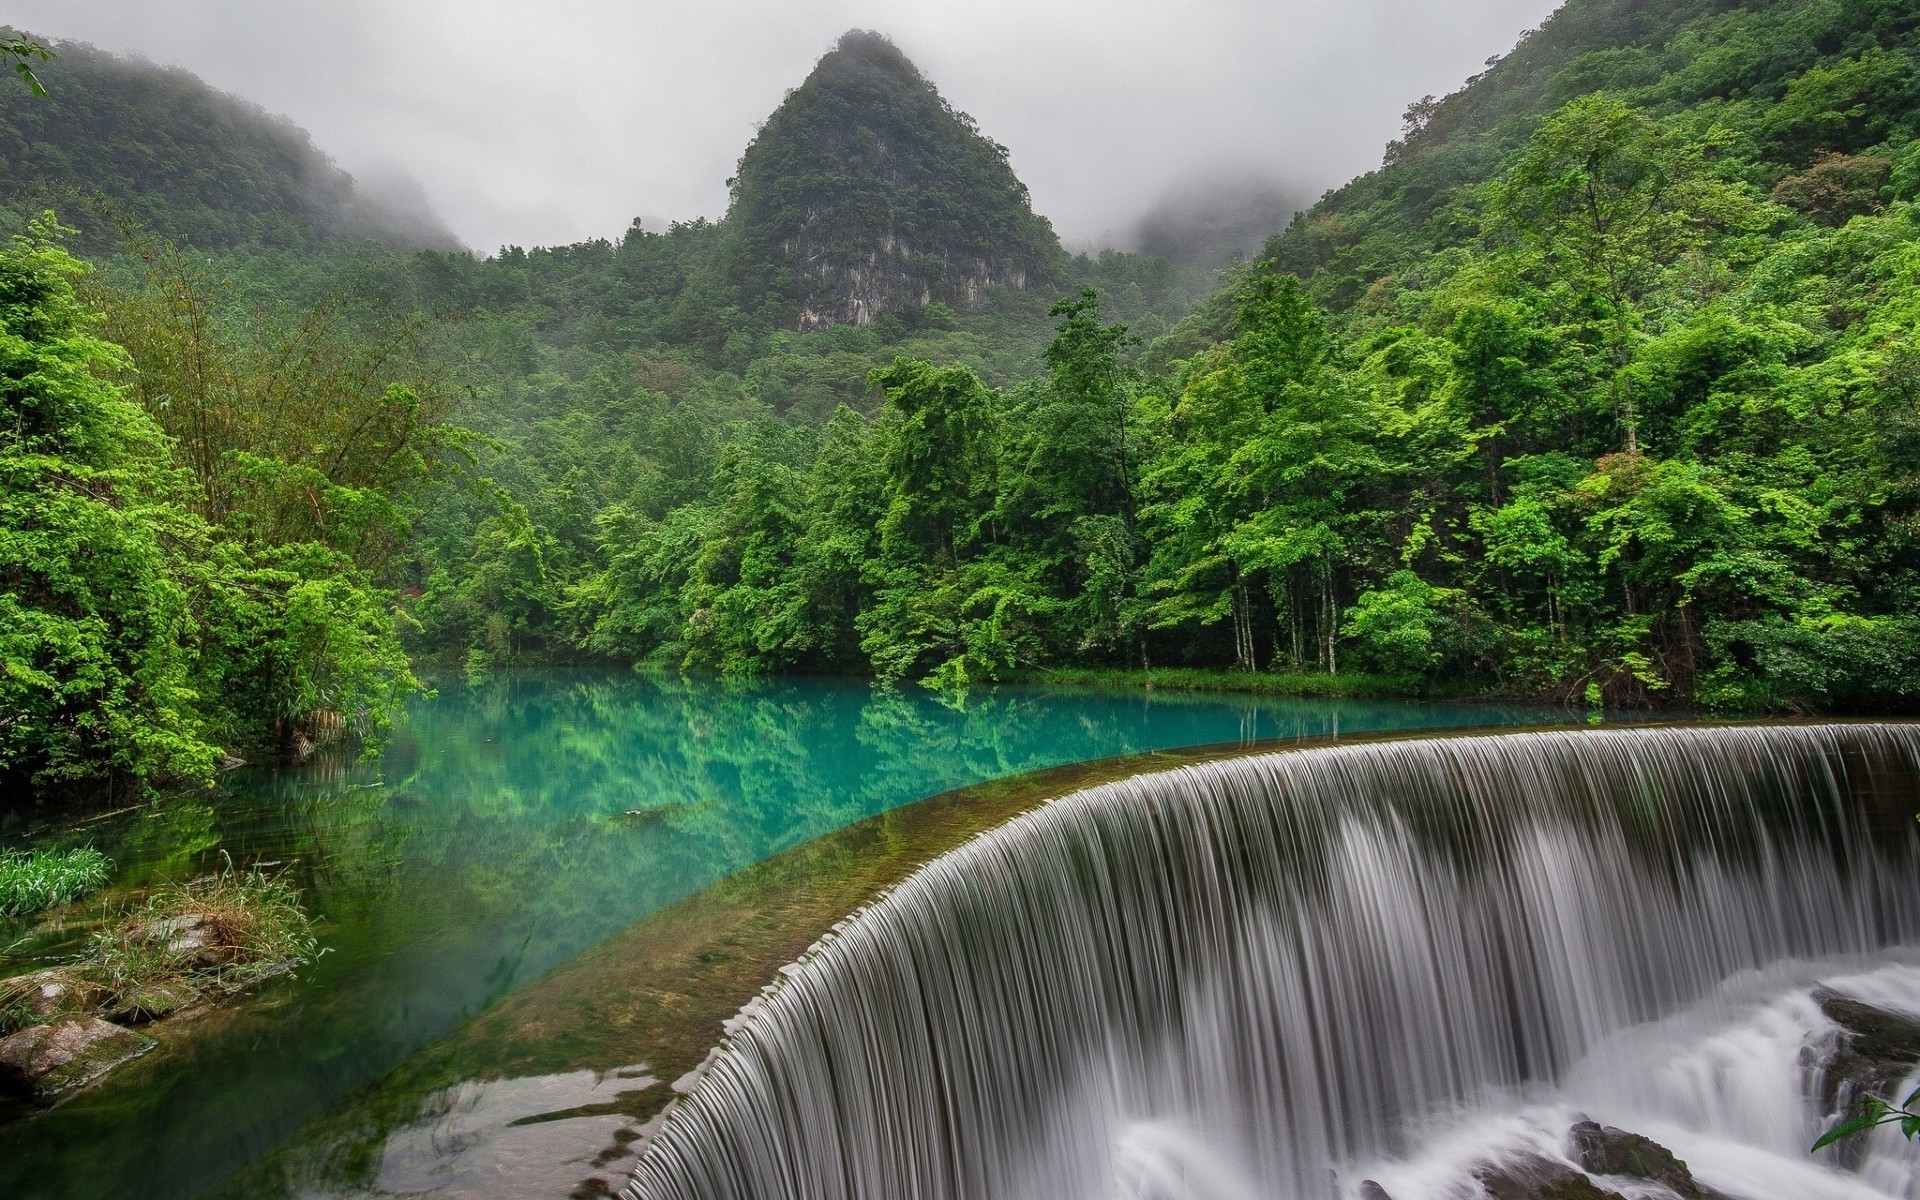 пейзажи воды водопад река пейзаж природа древесины путешествия поток горы тропический лес поток рок на открытом воздухе дерево каскад тропический лето джунгли живописный